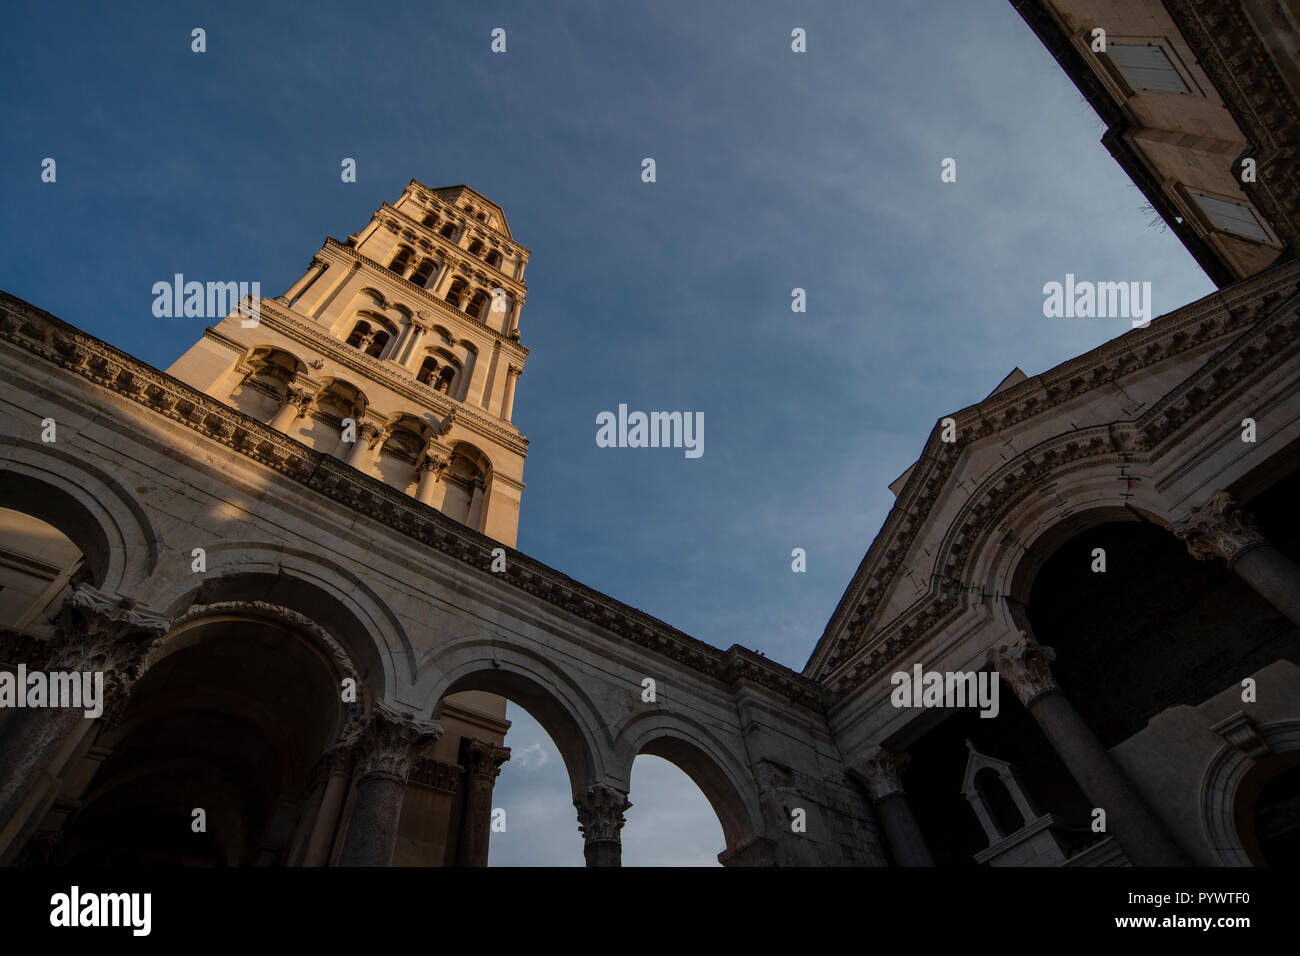 Kathedrale des Heiligen Domnius und Glockenturm, Alte Split, dem historischen Zentrum der Stadt Split, Kroatien, Peristil oder Peristil Platz. Stockfoto